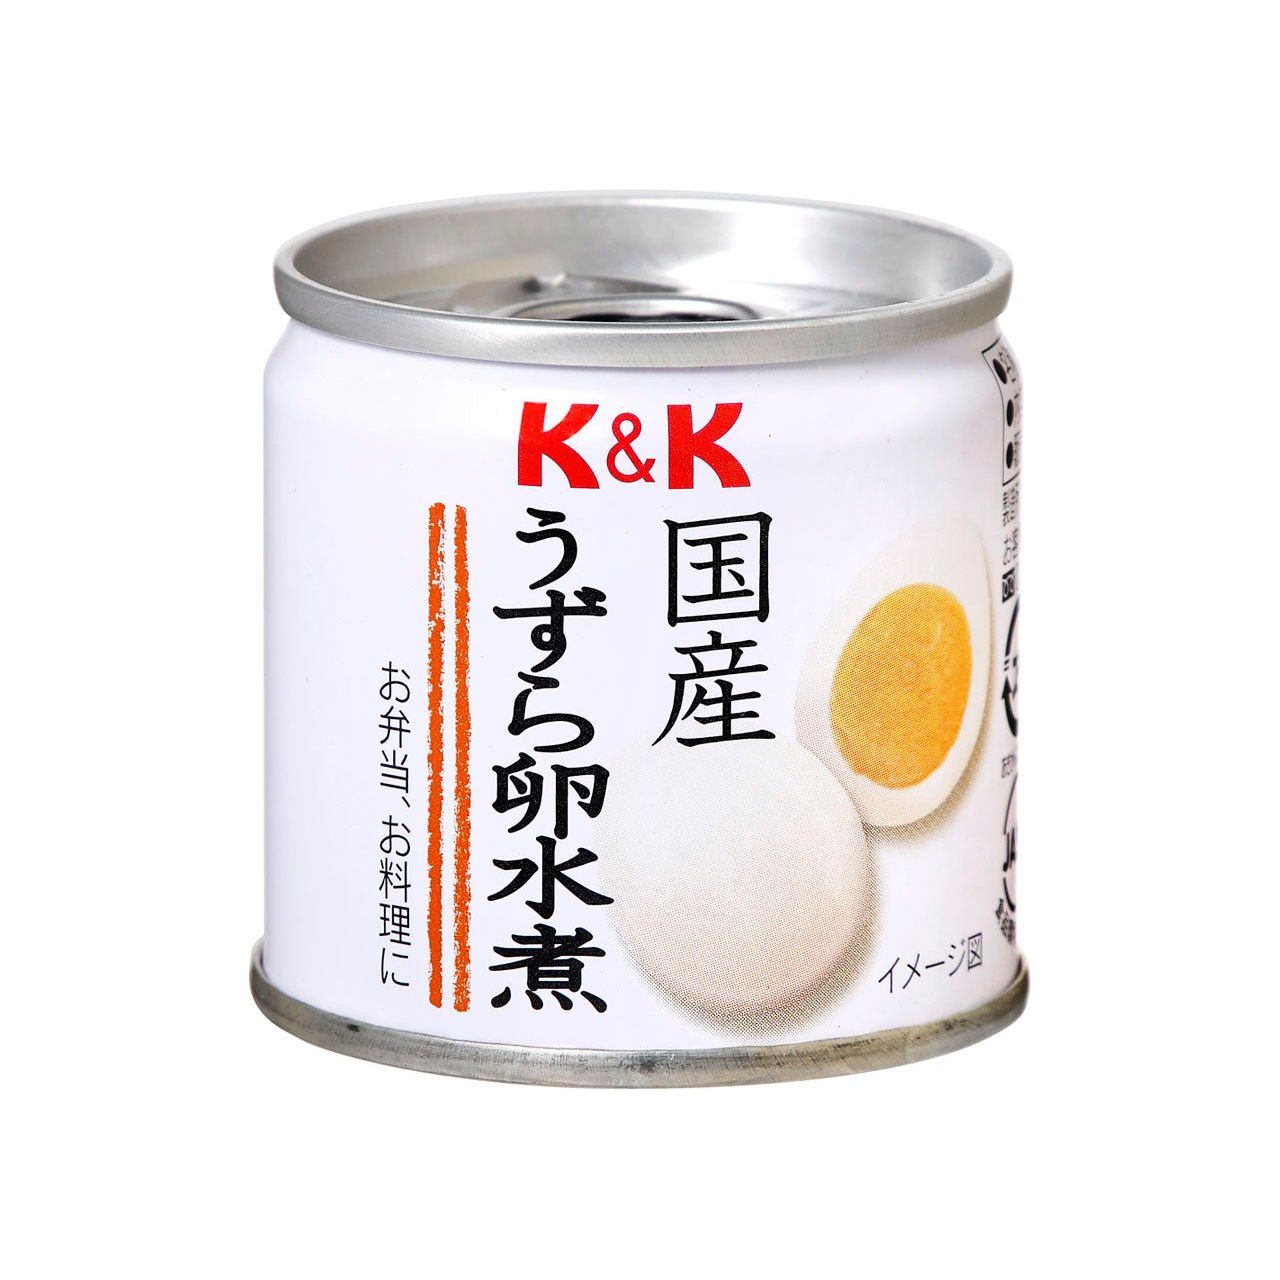 K&K Flying Oeuf Flying Egg bouilli